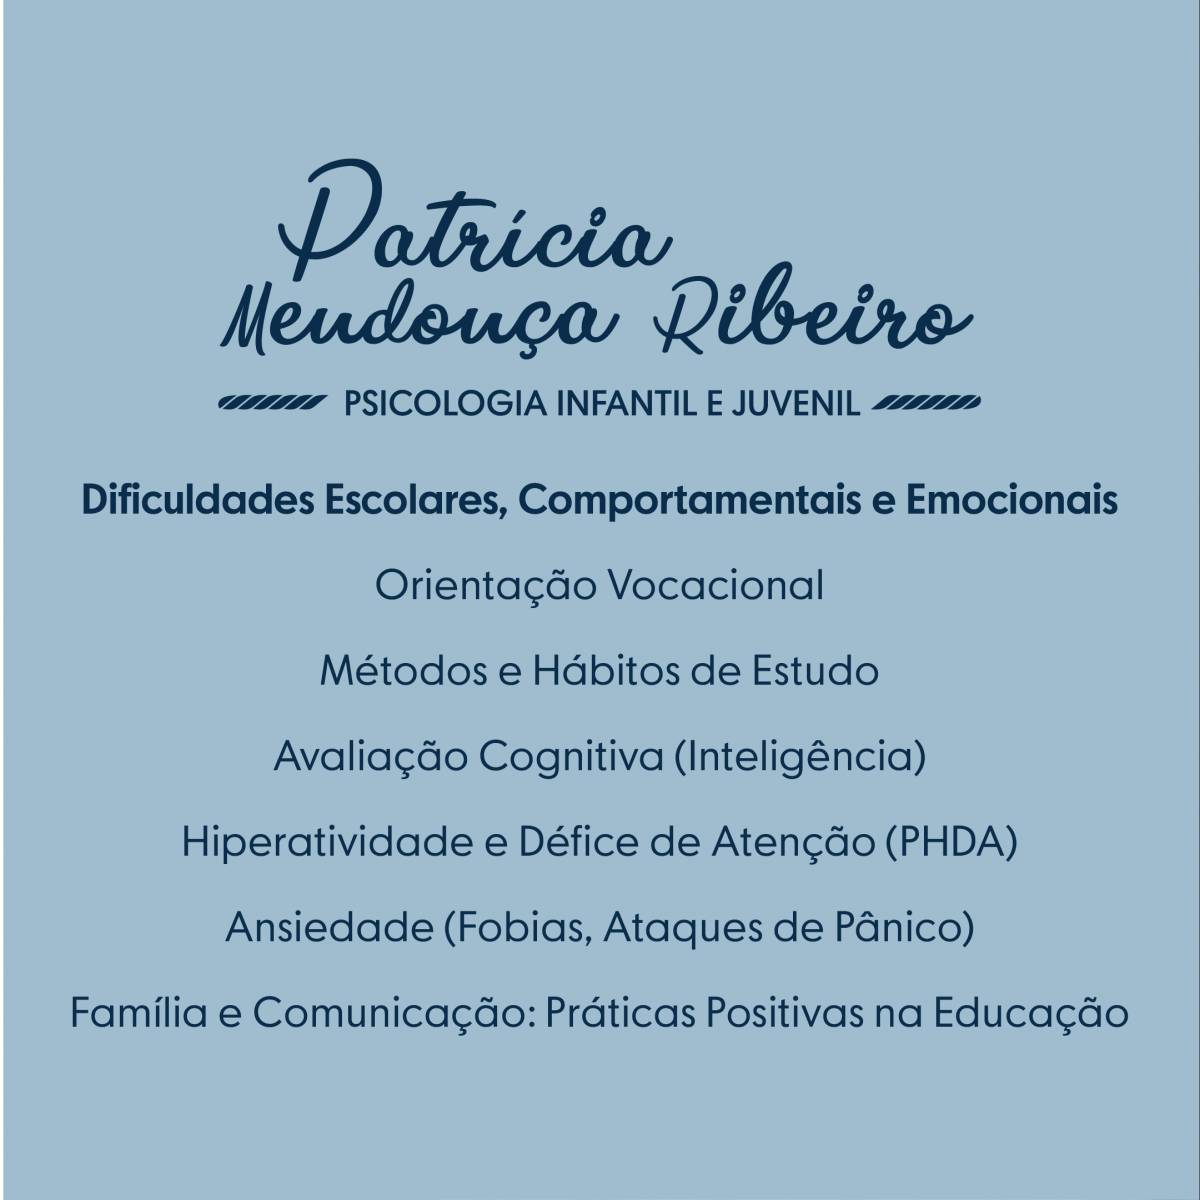 Patrícia Mendonça Ribeiro - Matosinhos - Psicologia